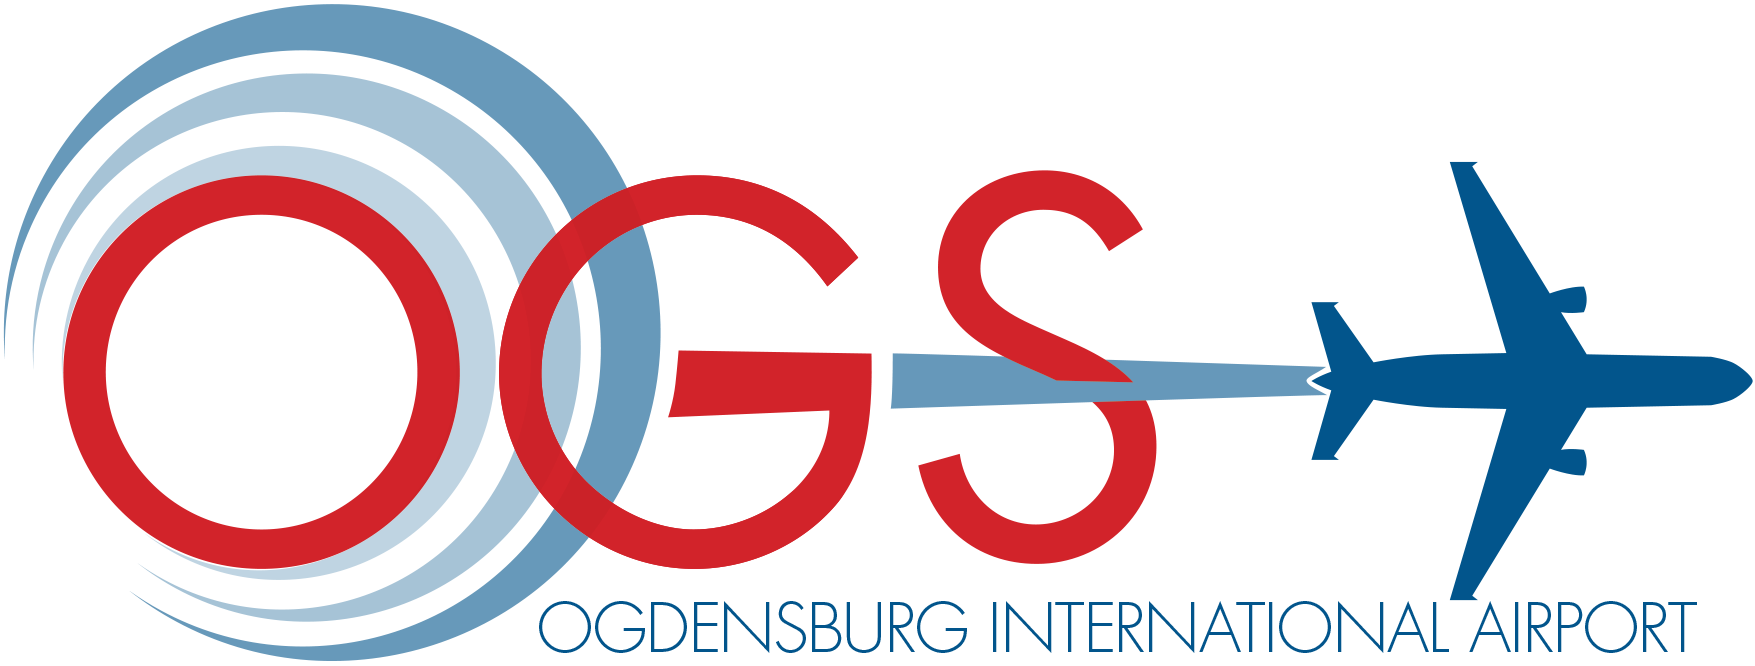 OGS_logo2